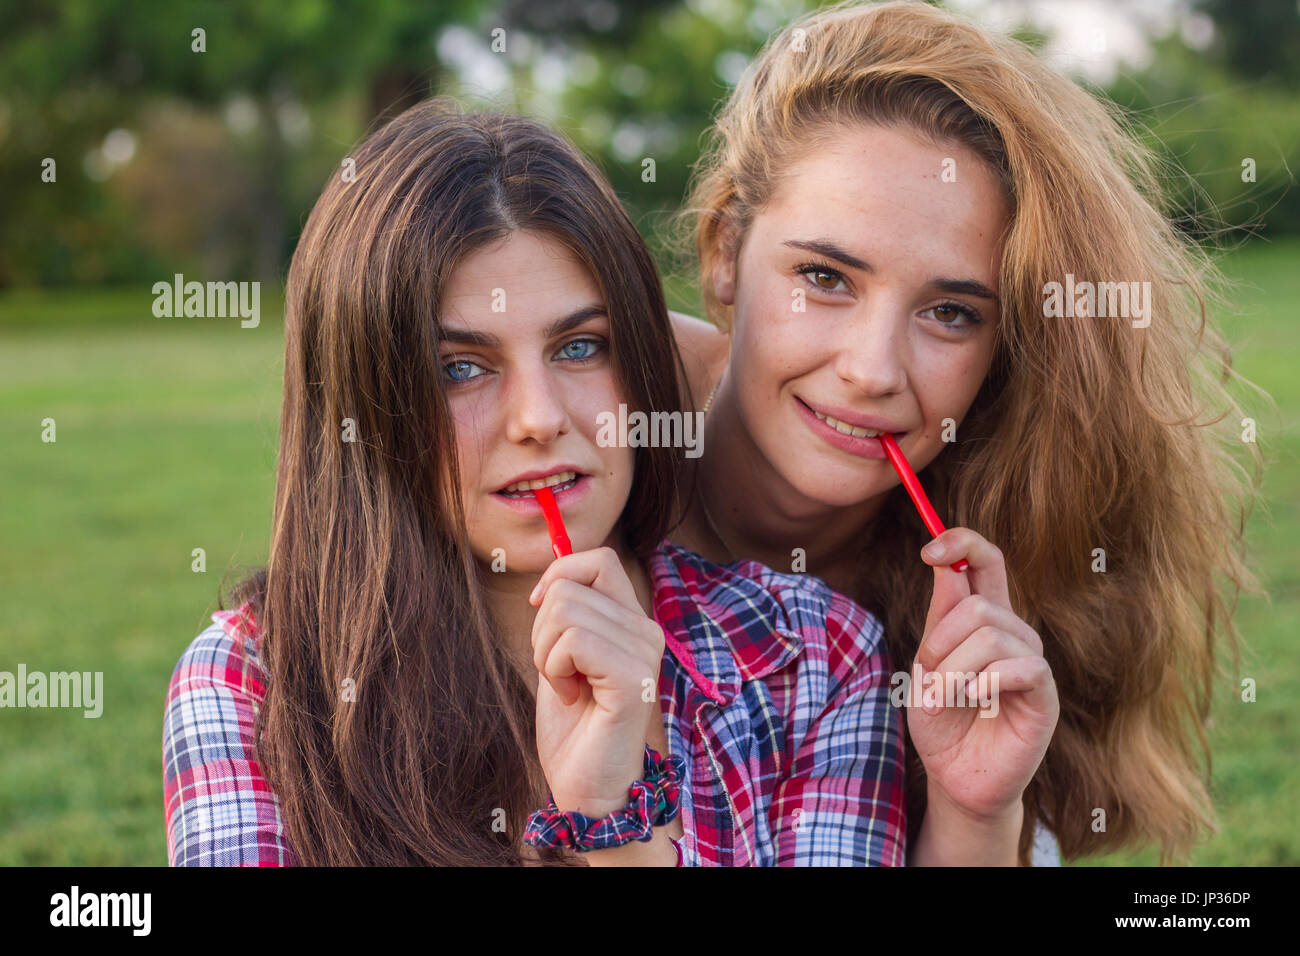 Female friends enjoying en mangeant une réglisse rouge maison de vacances dans le parc. Ils sont jeunes, l'un a les yeux bleus et l'autre est blonde. Banque D'Images